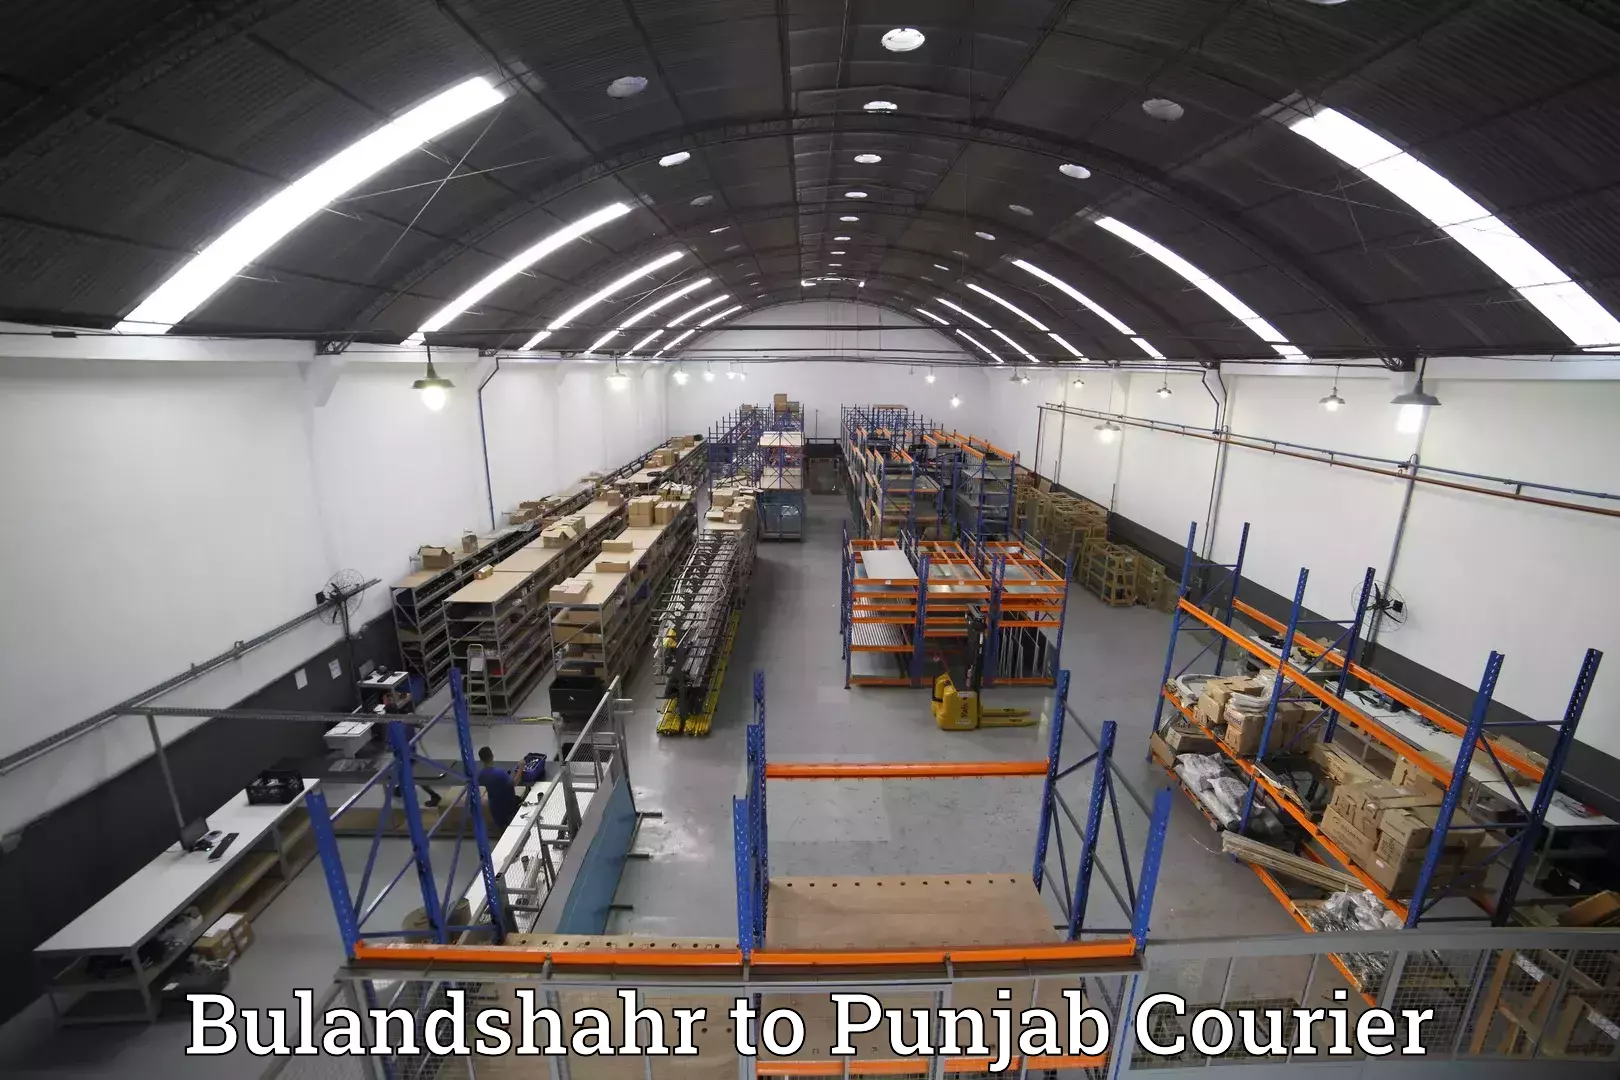 Luggage shipment specialists Bulandshahr to Central University of Punjab Bathinda